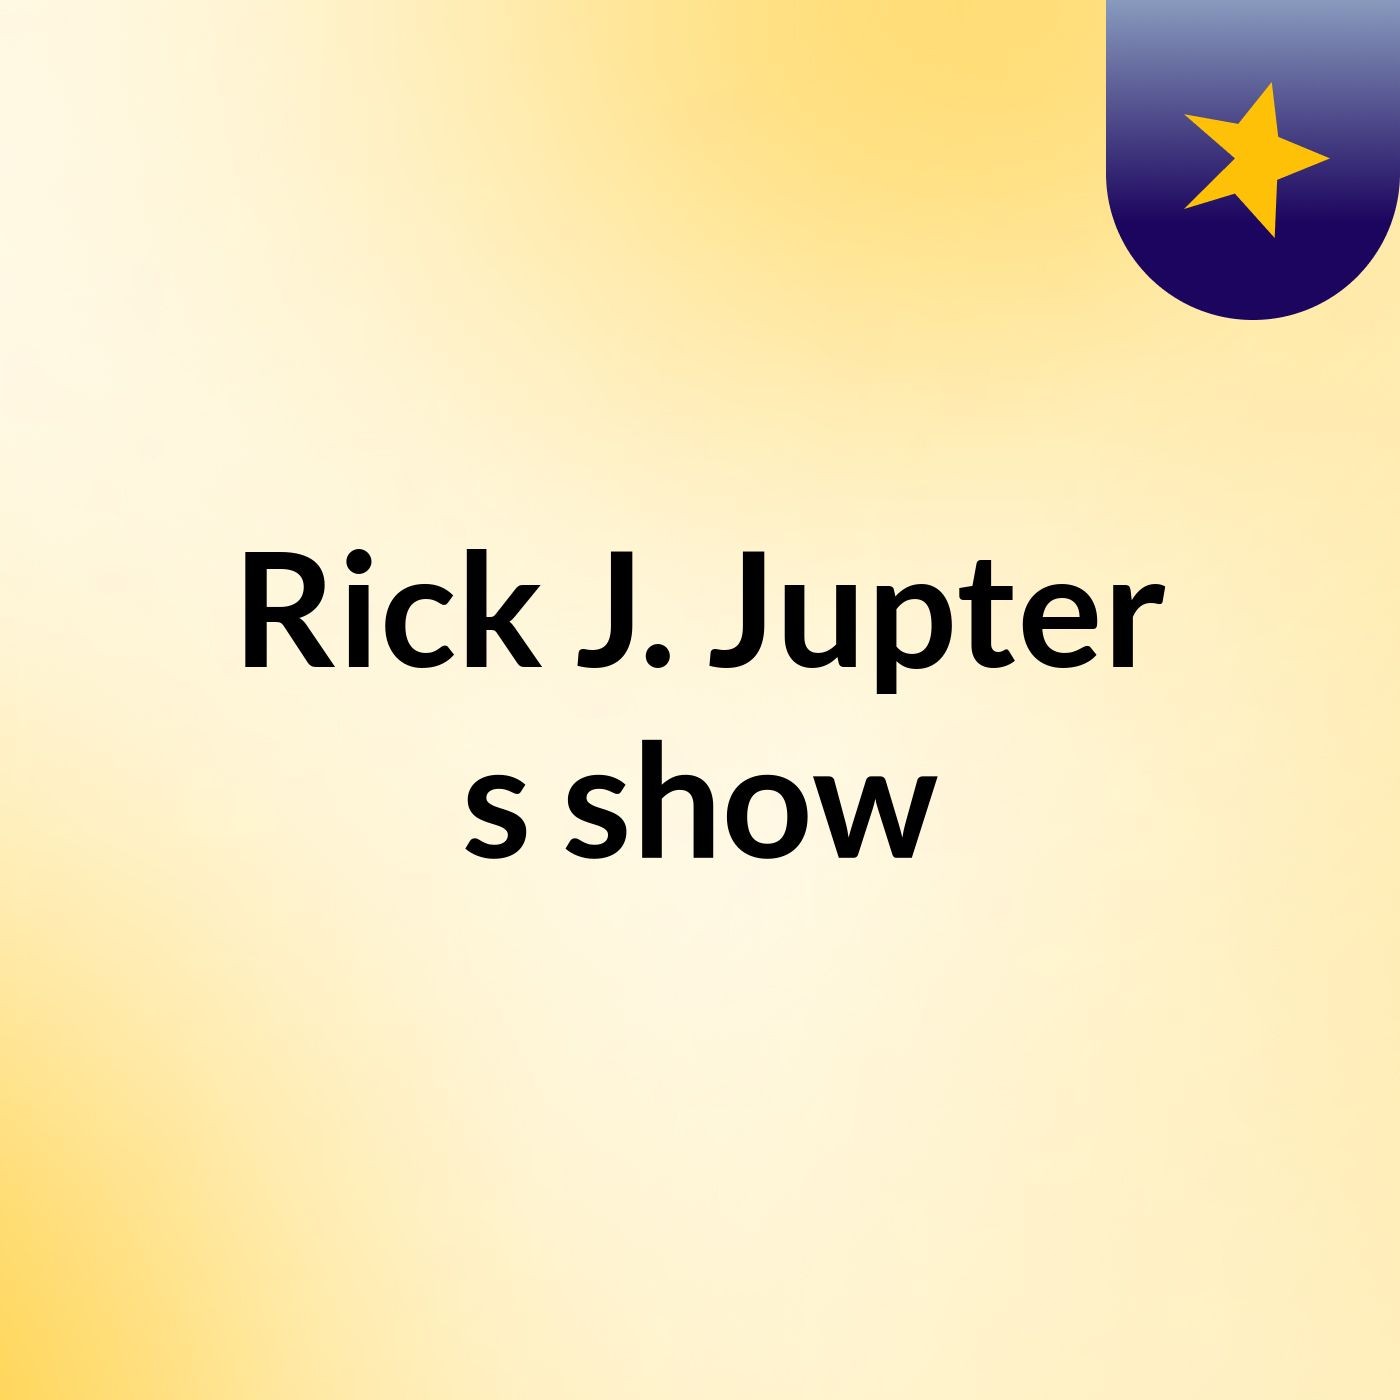 Rick J. Jupter's show